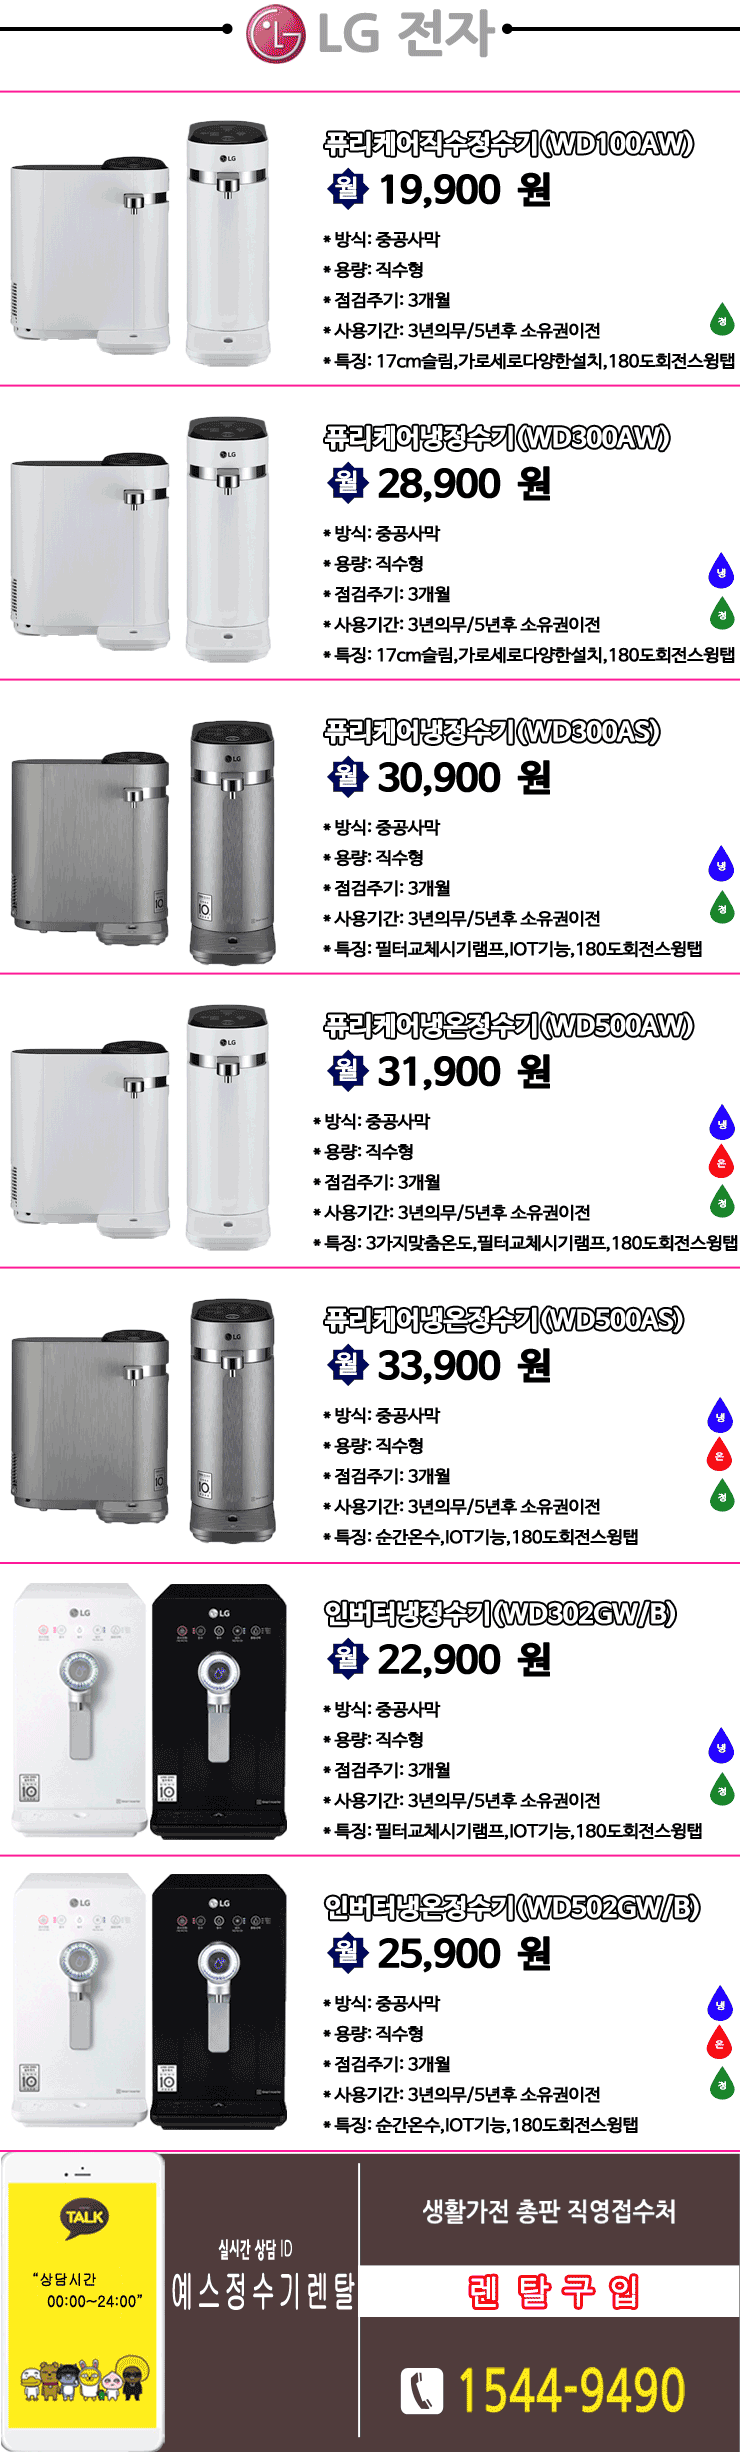 LG정수기.gif : LG퓨리케어 정유년 새해 이벤트 2개월렌탈료무료 마감임박!!